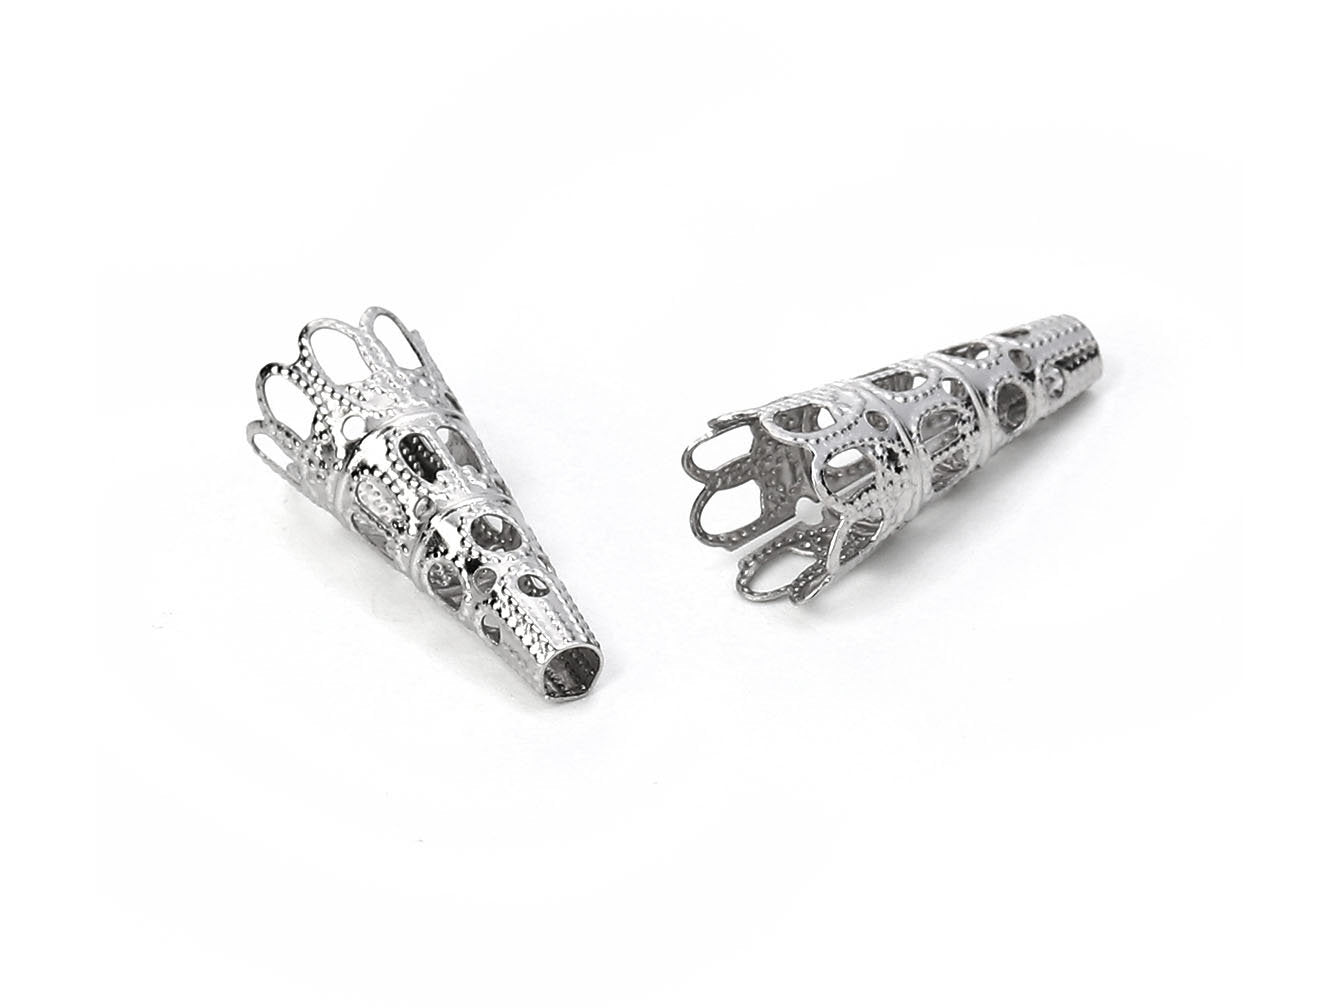 10 Cone bead caps hypoallergenic stainless steel 22mm beadcaps